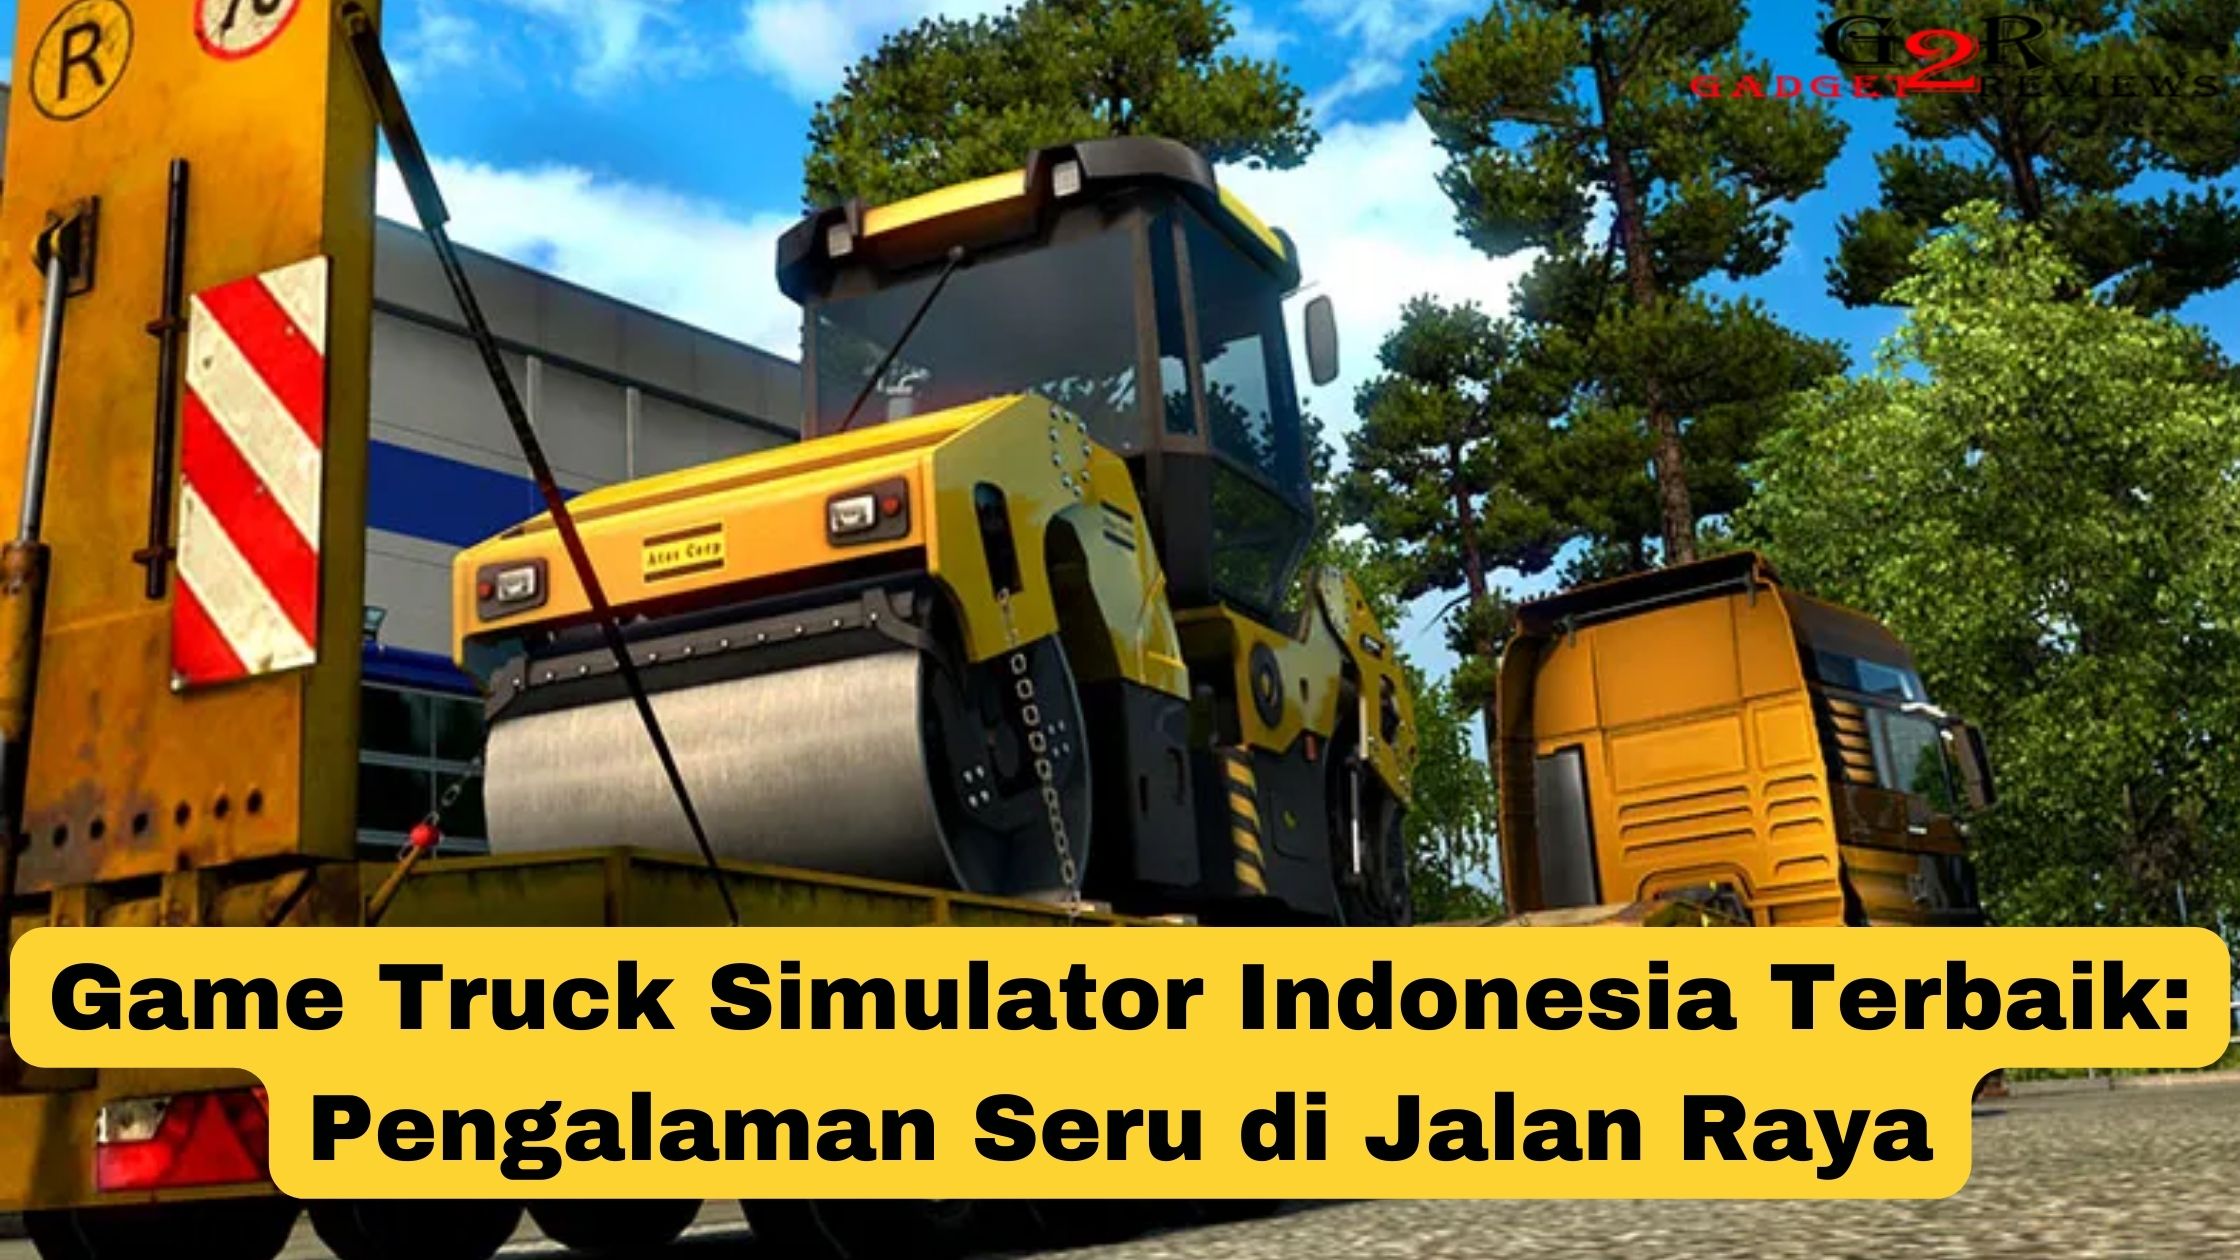 Temukan game truck simulator Indonesia terbaik yang akan memberikanmu pengalaman seru menjadi sopir truk di jalan raya.